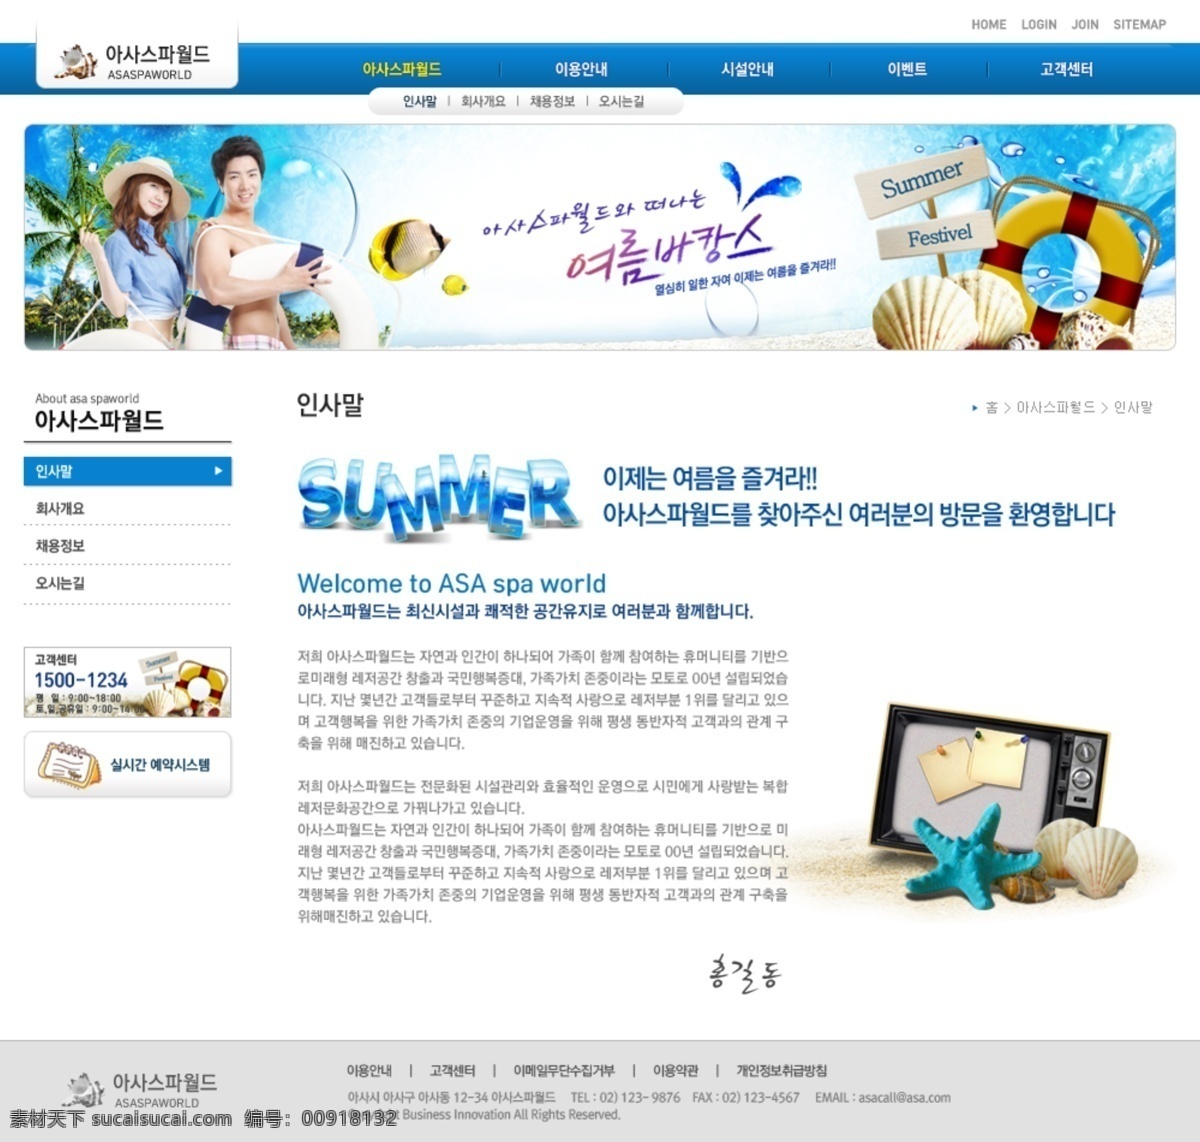 韩国卡通 韩国美女 韩国网页模板 卡通风格 蓝色模板 沙滩 水元素 网页模板 韩国精品模板 精品模板 韩国可爱模板 网页素材